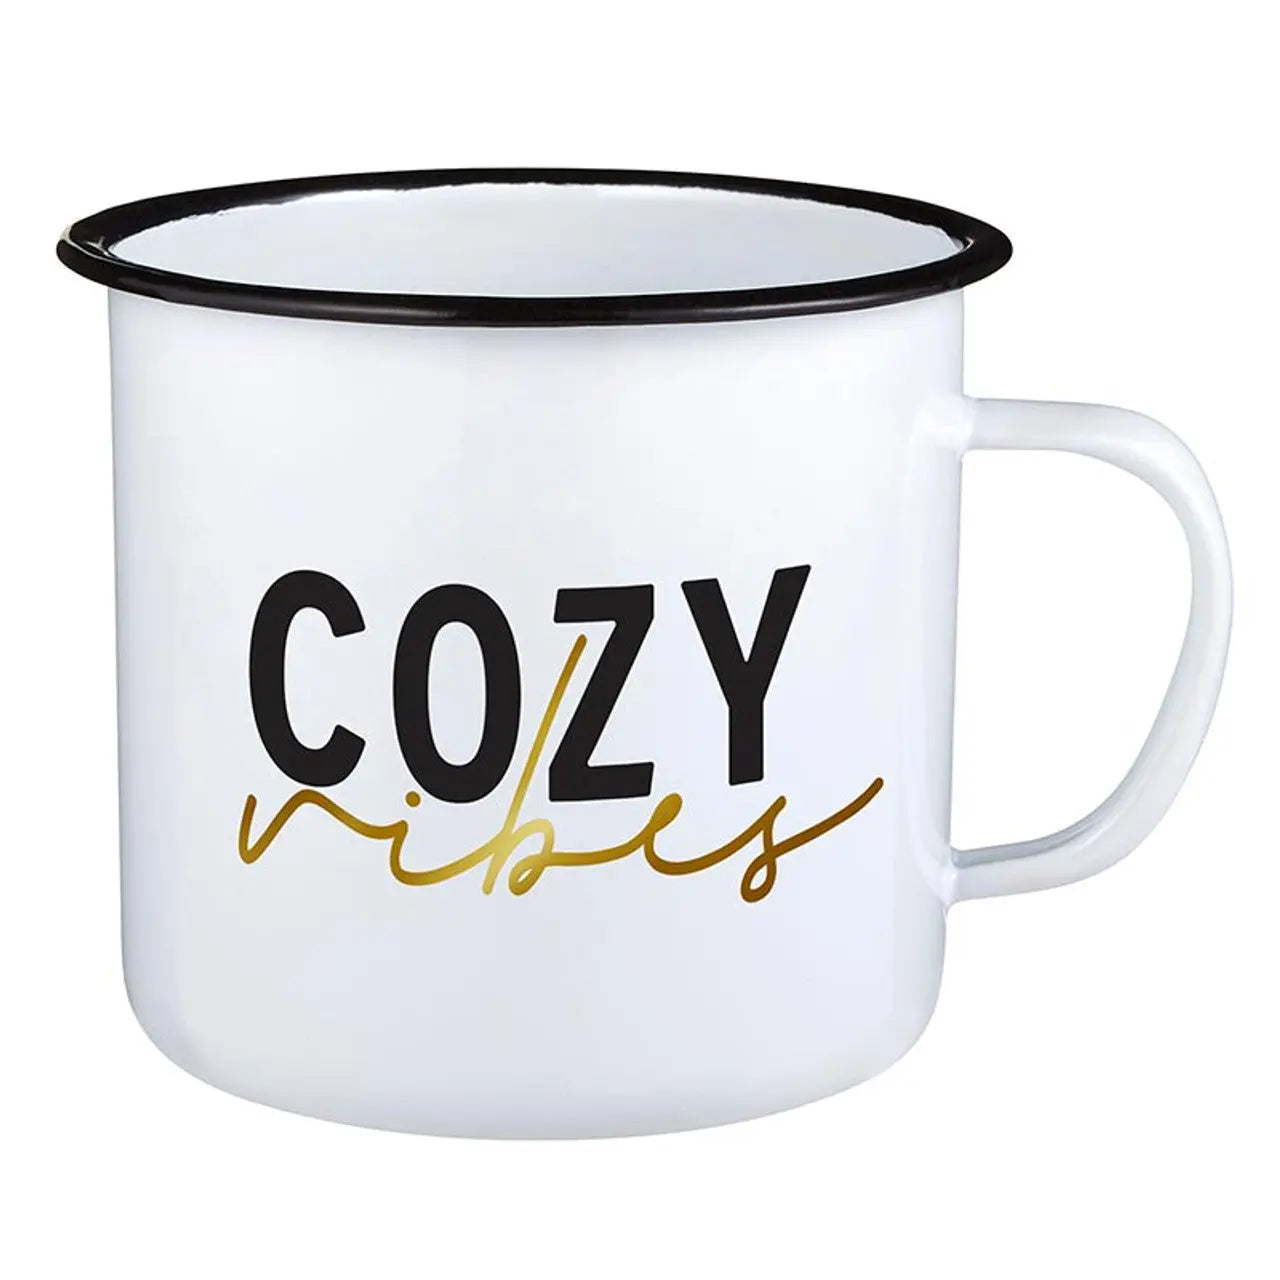 Cozy Vibes Mug - 24oz Mug - The Gifted Basket